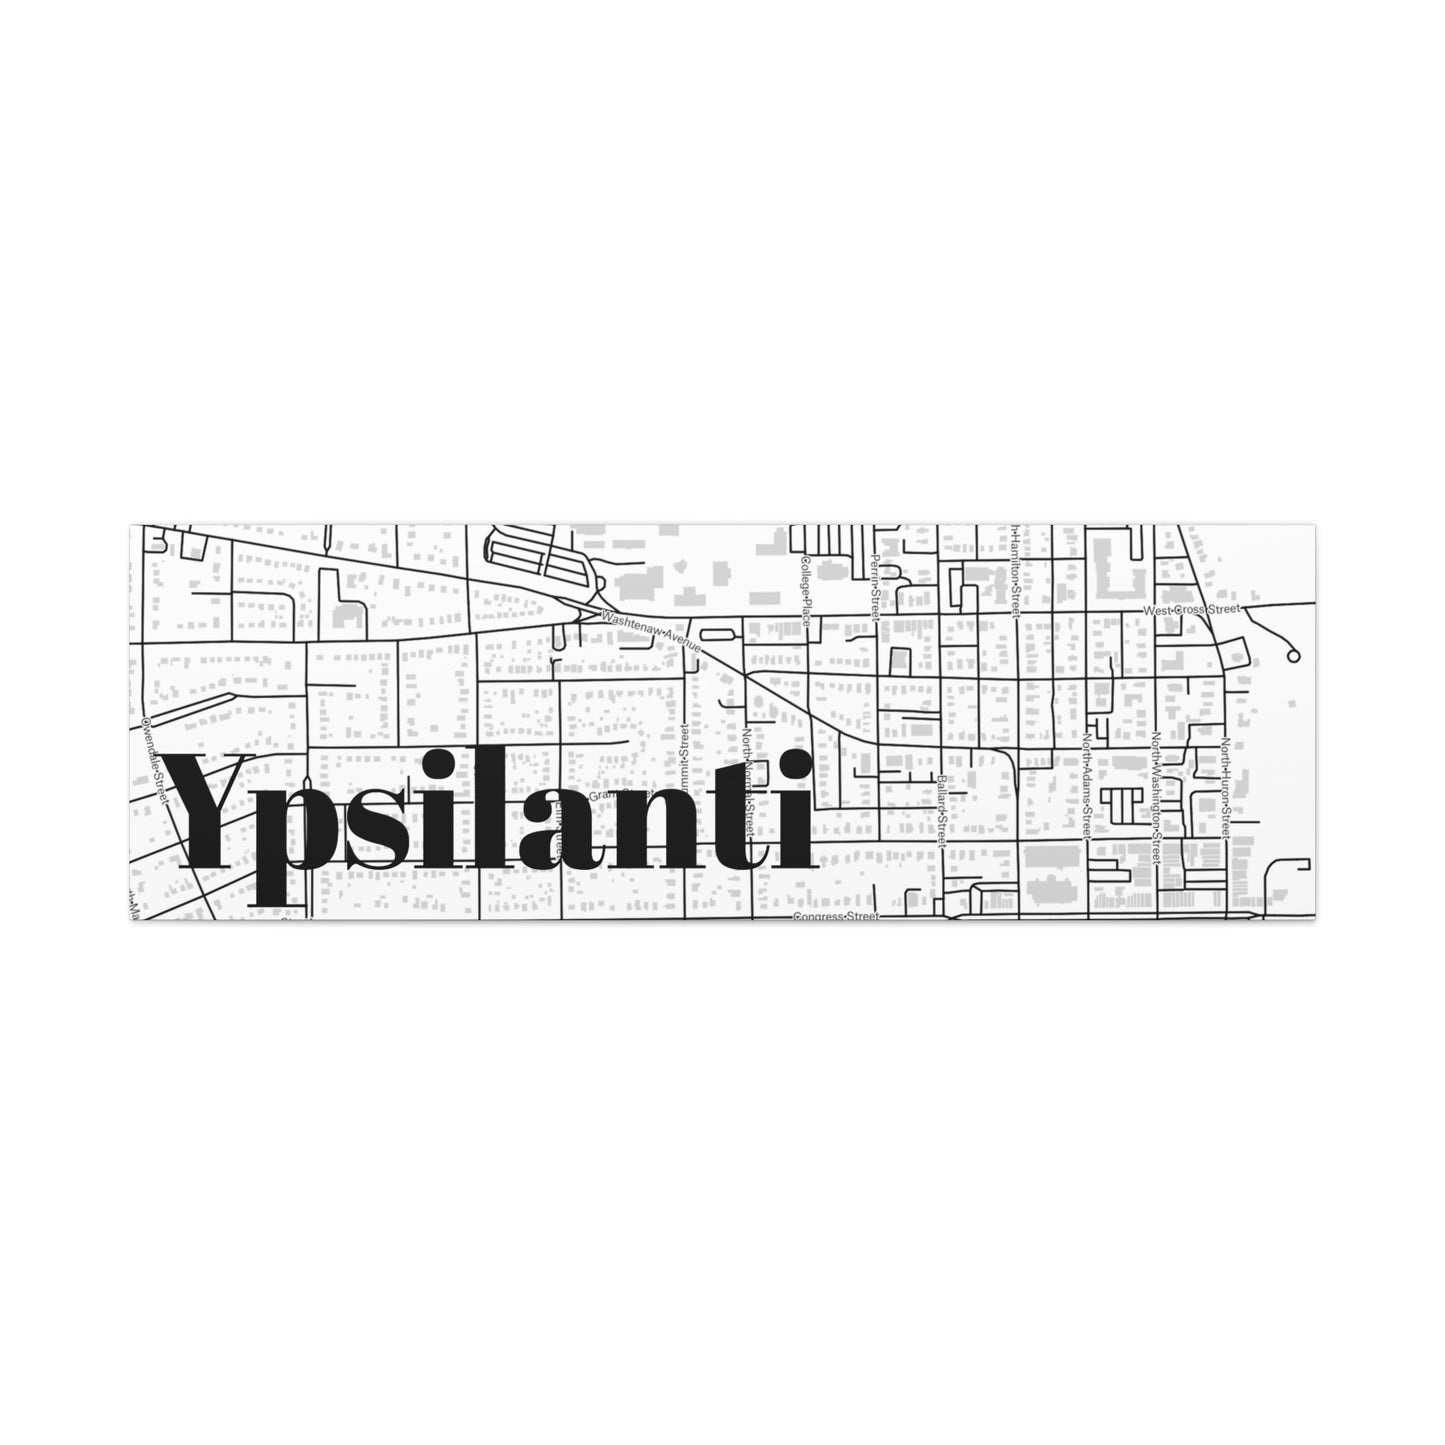 Ypsilanti (City) Canvas